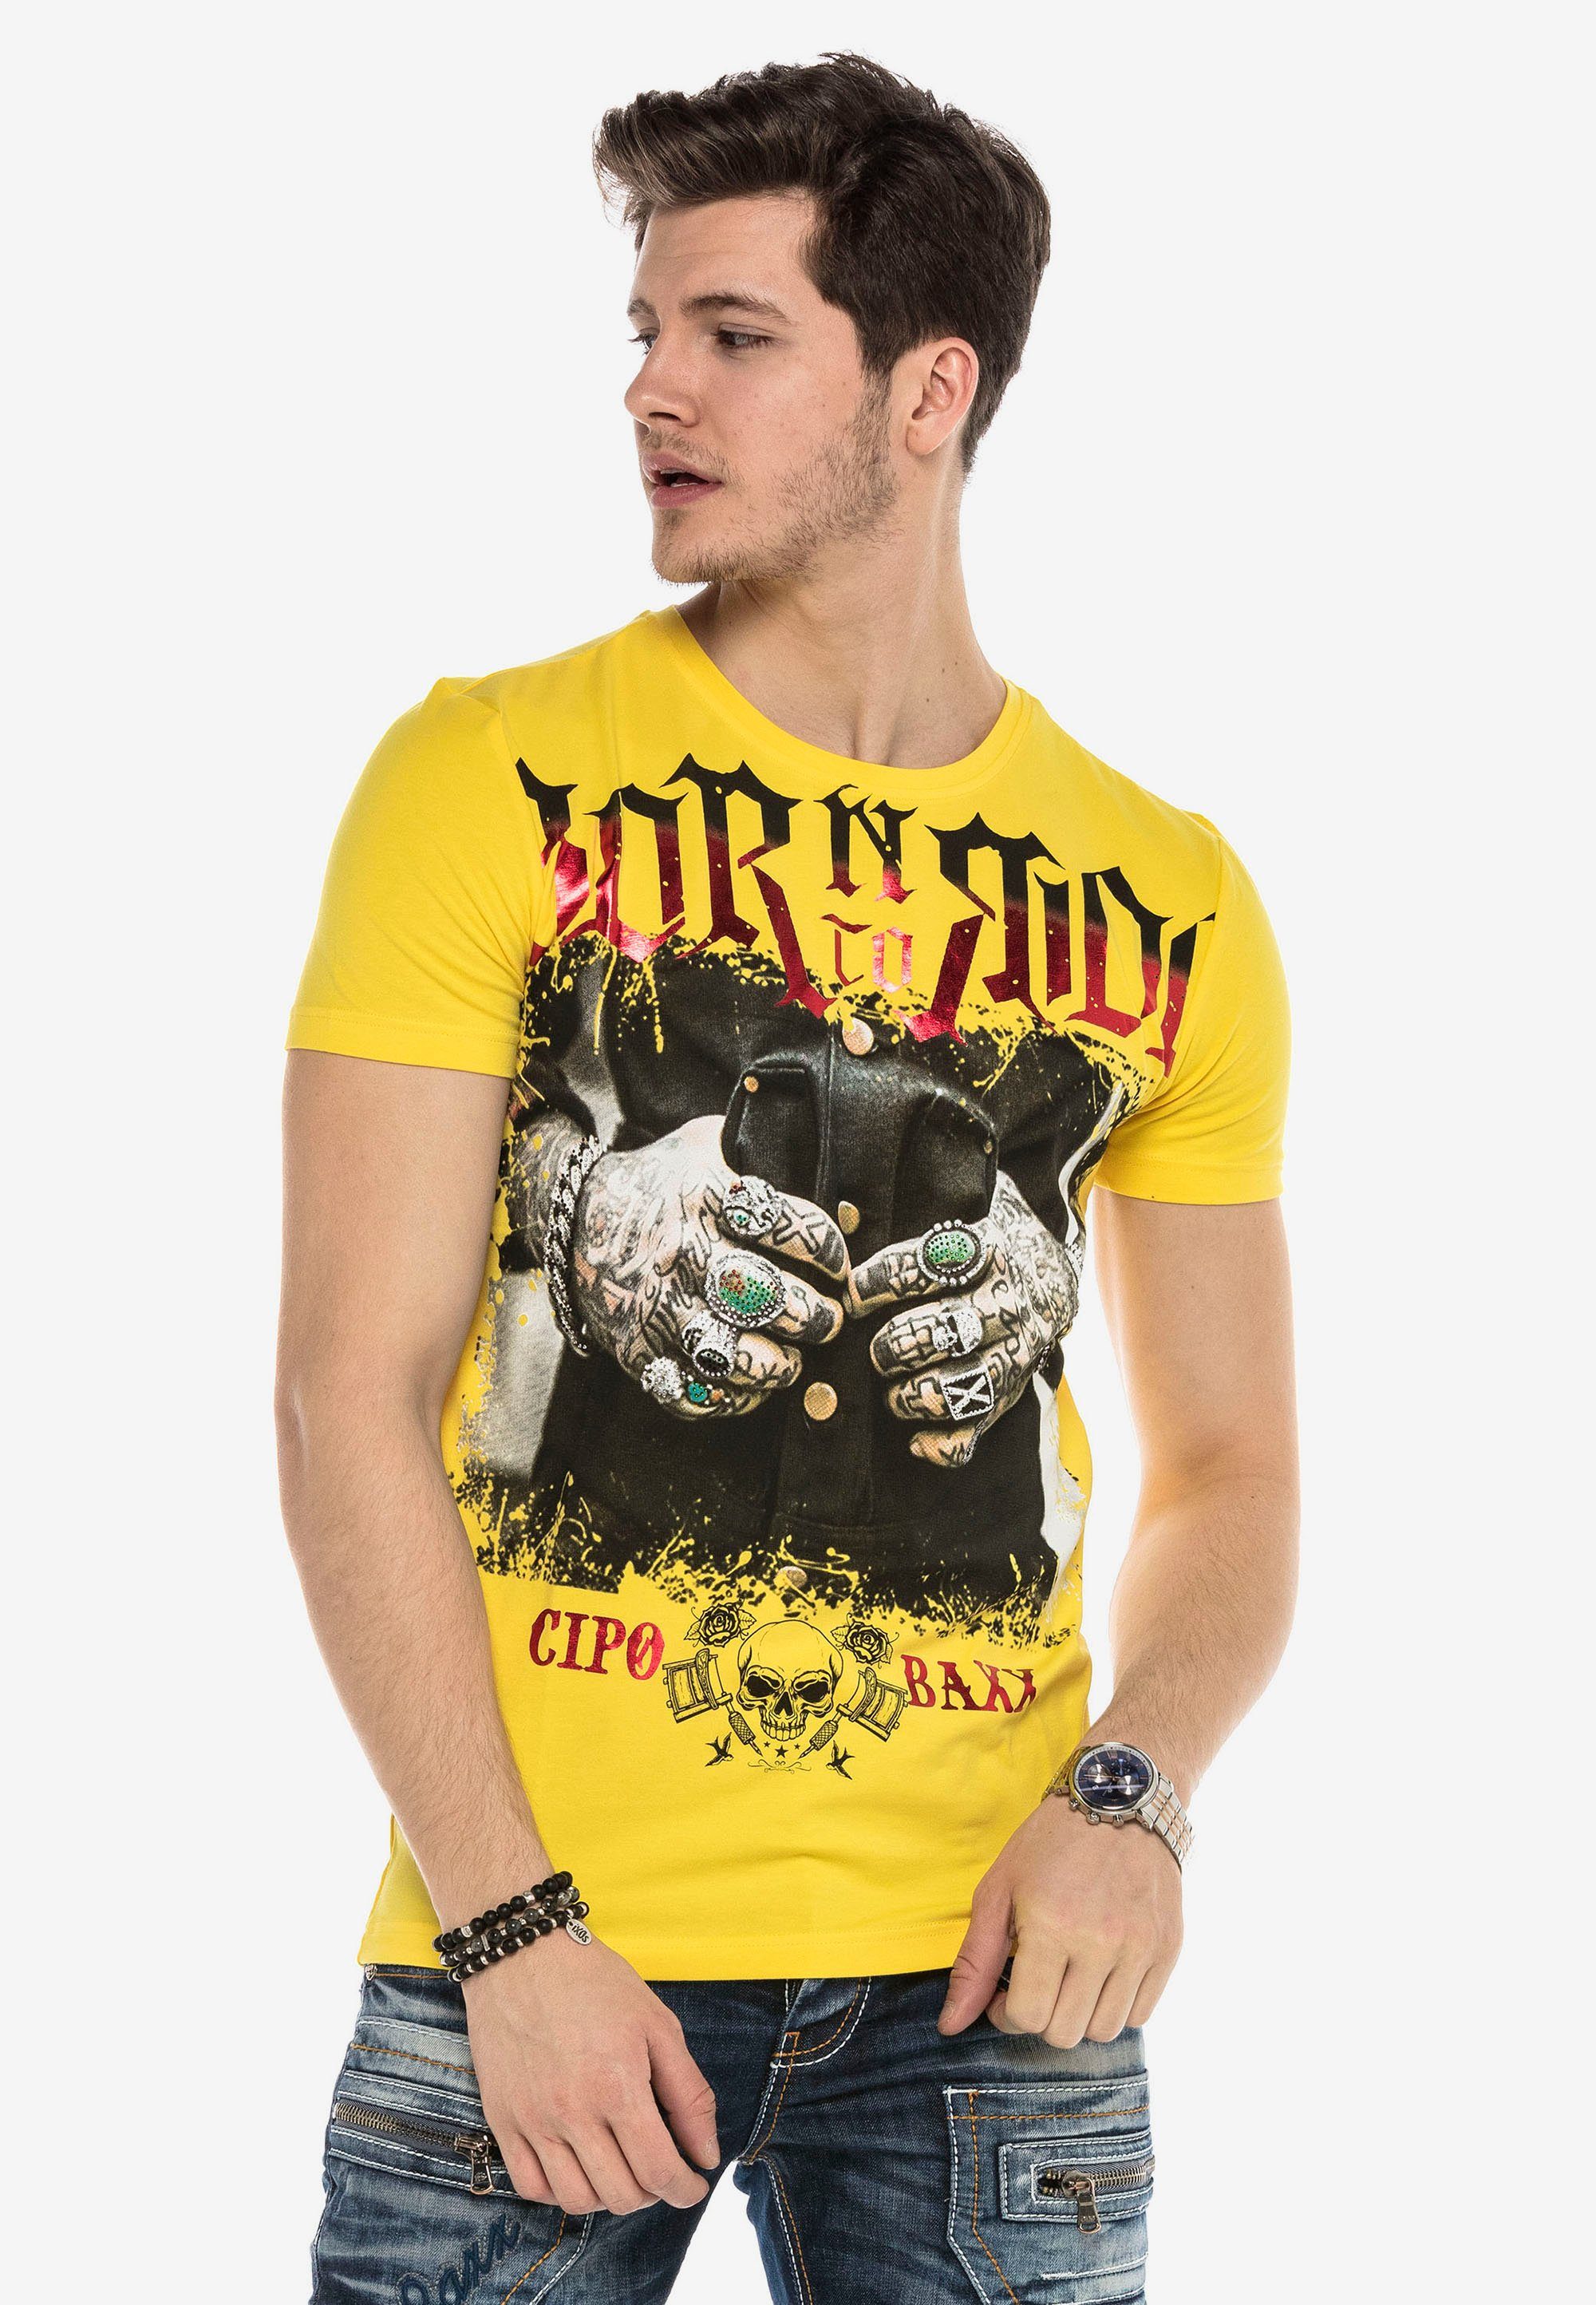 T-Shirt & gelb stylischem Baxx mit Cipo Grafikprint